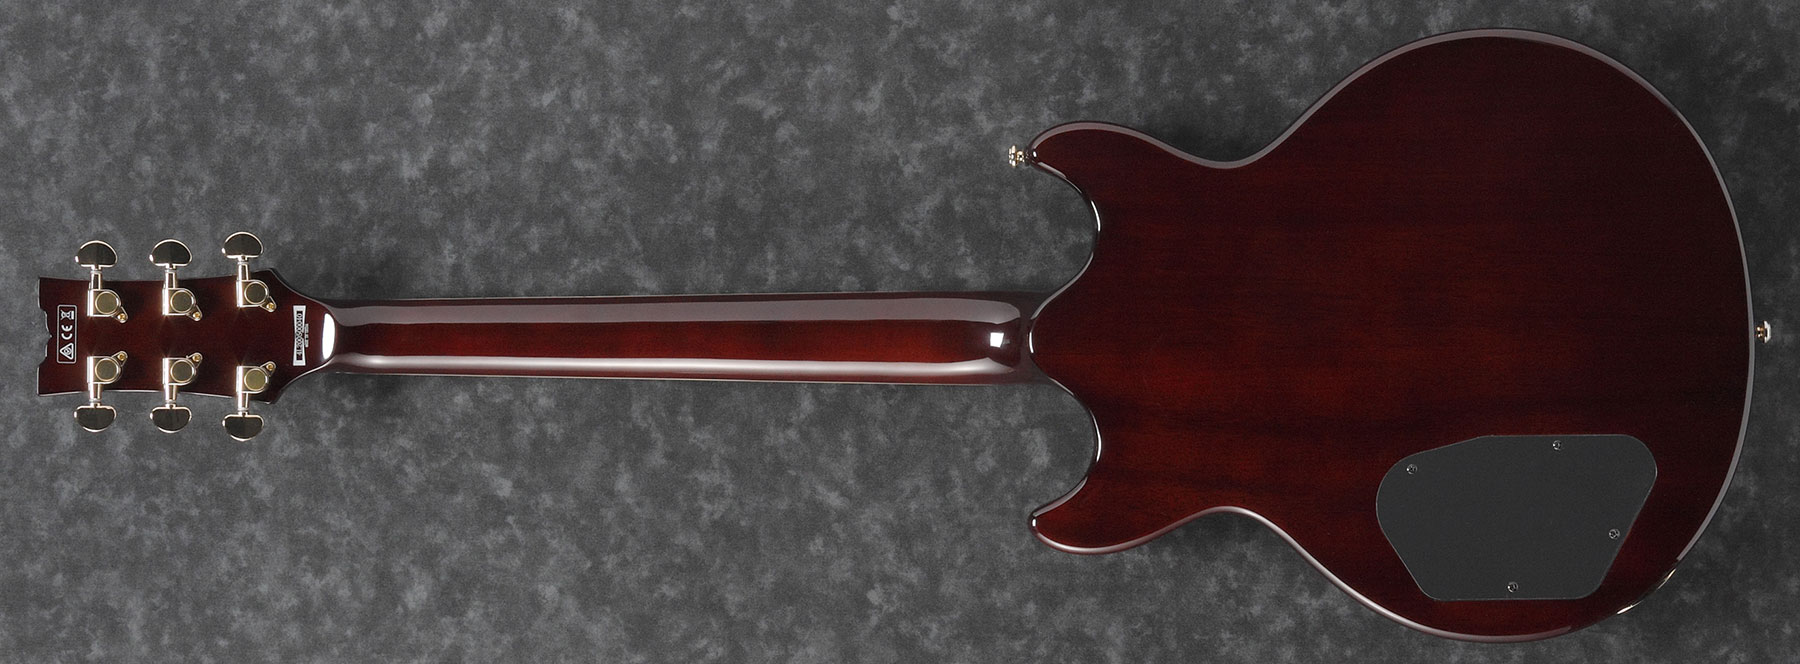 Ibanez Ar520hfm Vls Standard Hh Ht Jat - Violin Sunburst - Hollow-body electric guitar - Variation 1